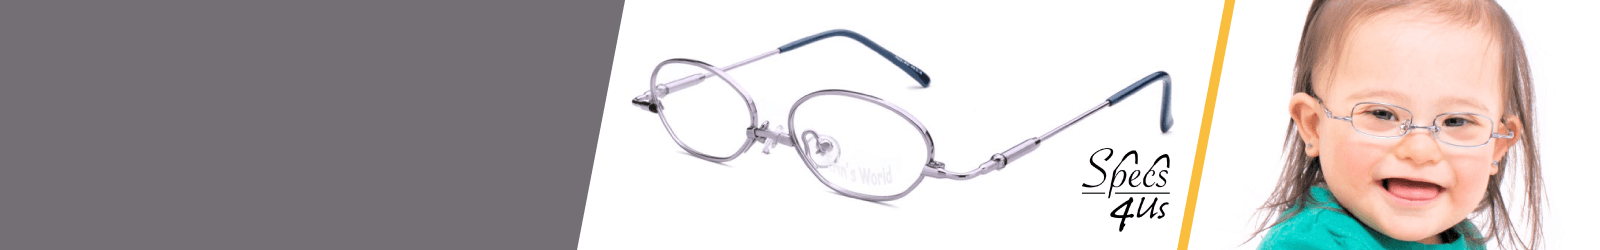 Silver Specs4us Eyewear for Kids